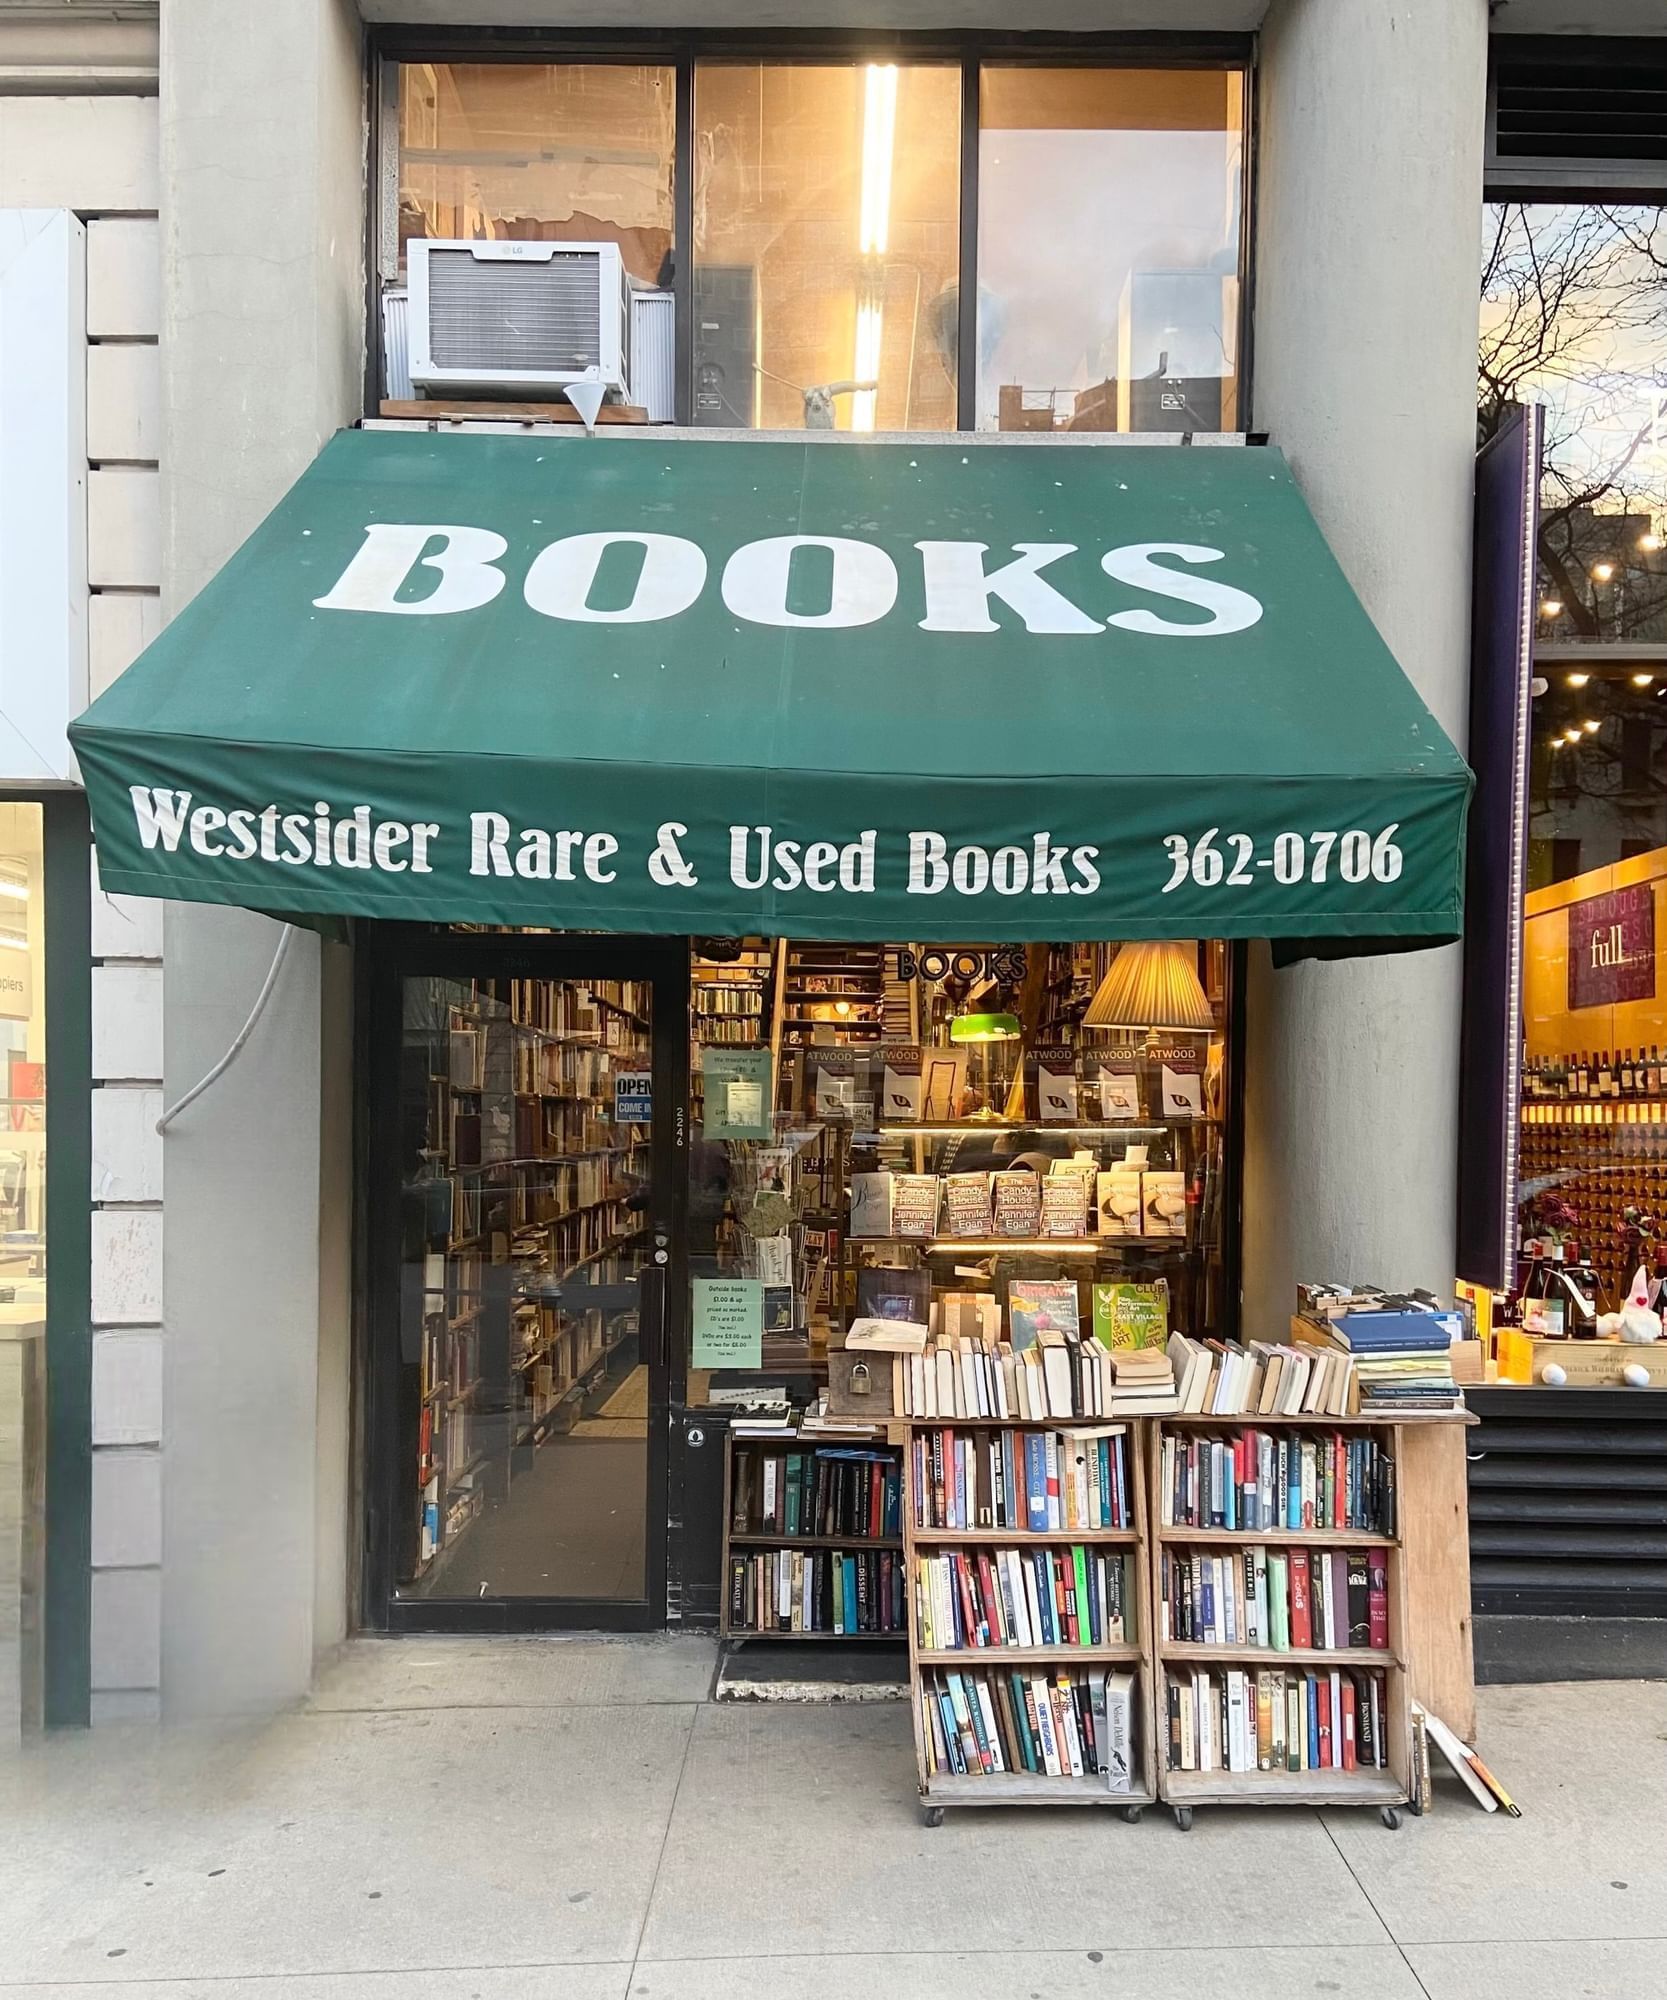 Westsider Rare & Used Books shop front near ArtHouse Hotel